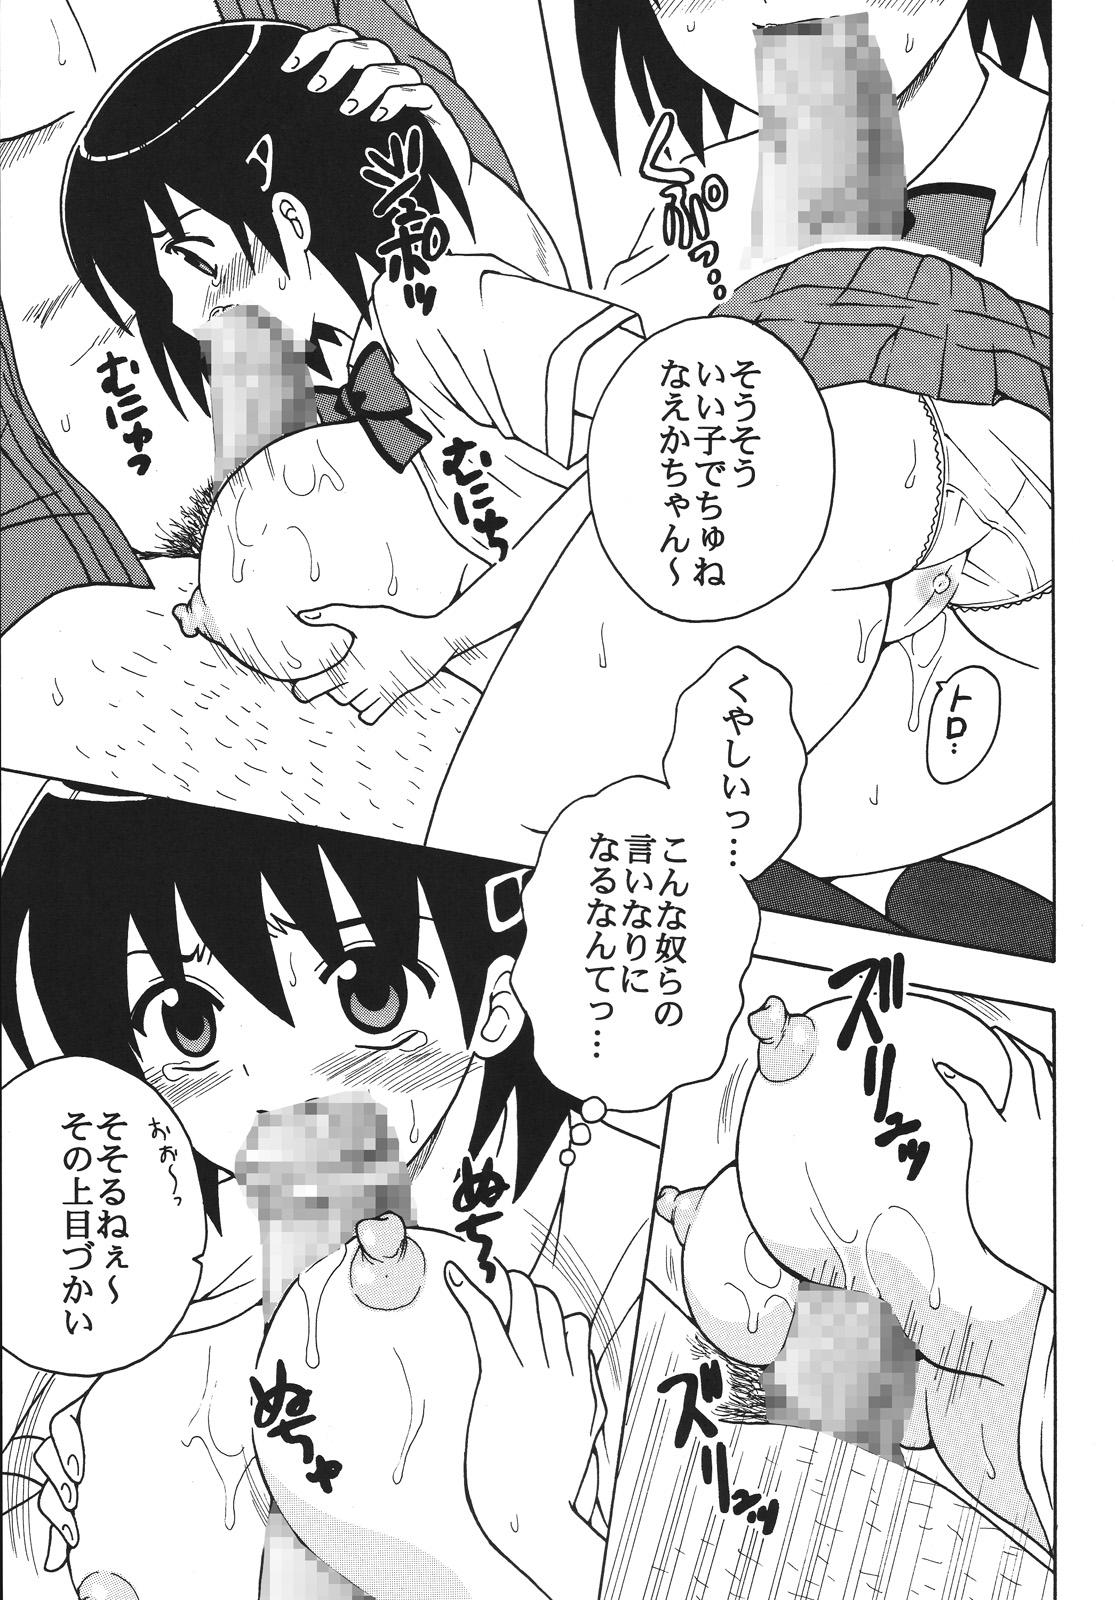 Brazzers Nakadashi Maid no Hinkaku 1 - Kamen no maid guy Selfie - Page 8